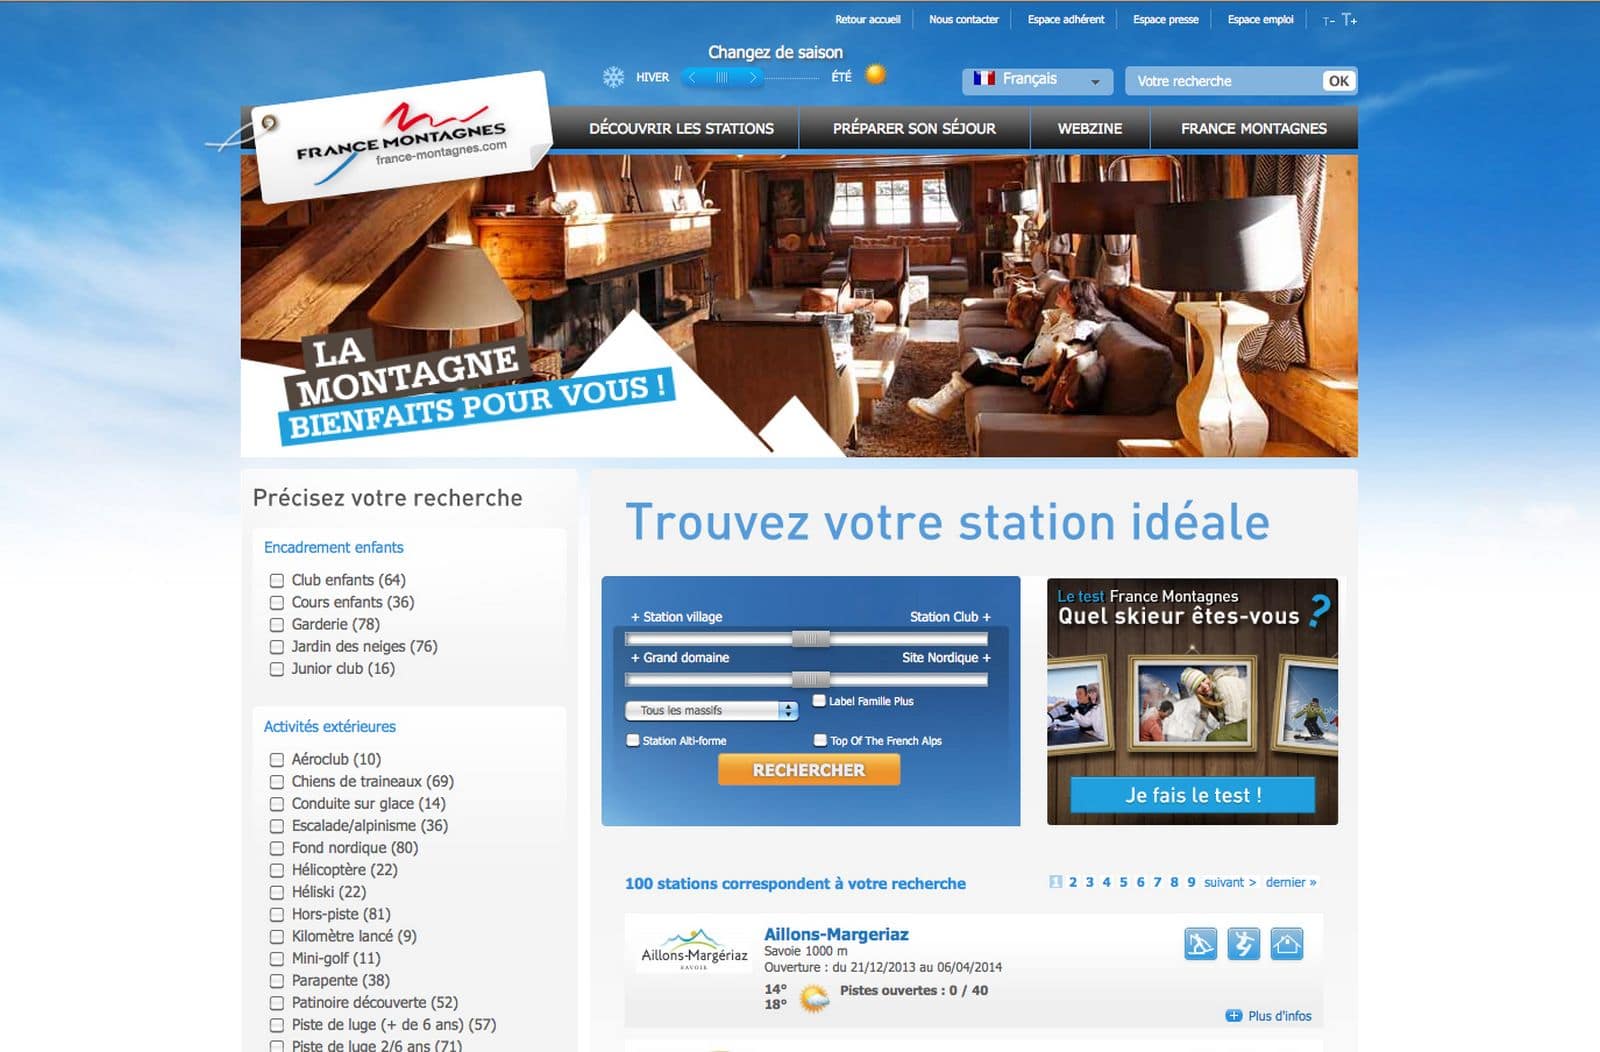 Photo d'un hôtel utilisée par France Montagnes sur son site internet